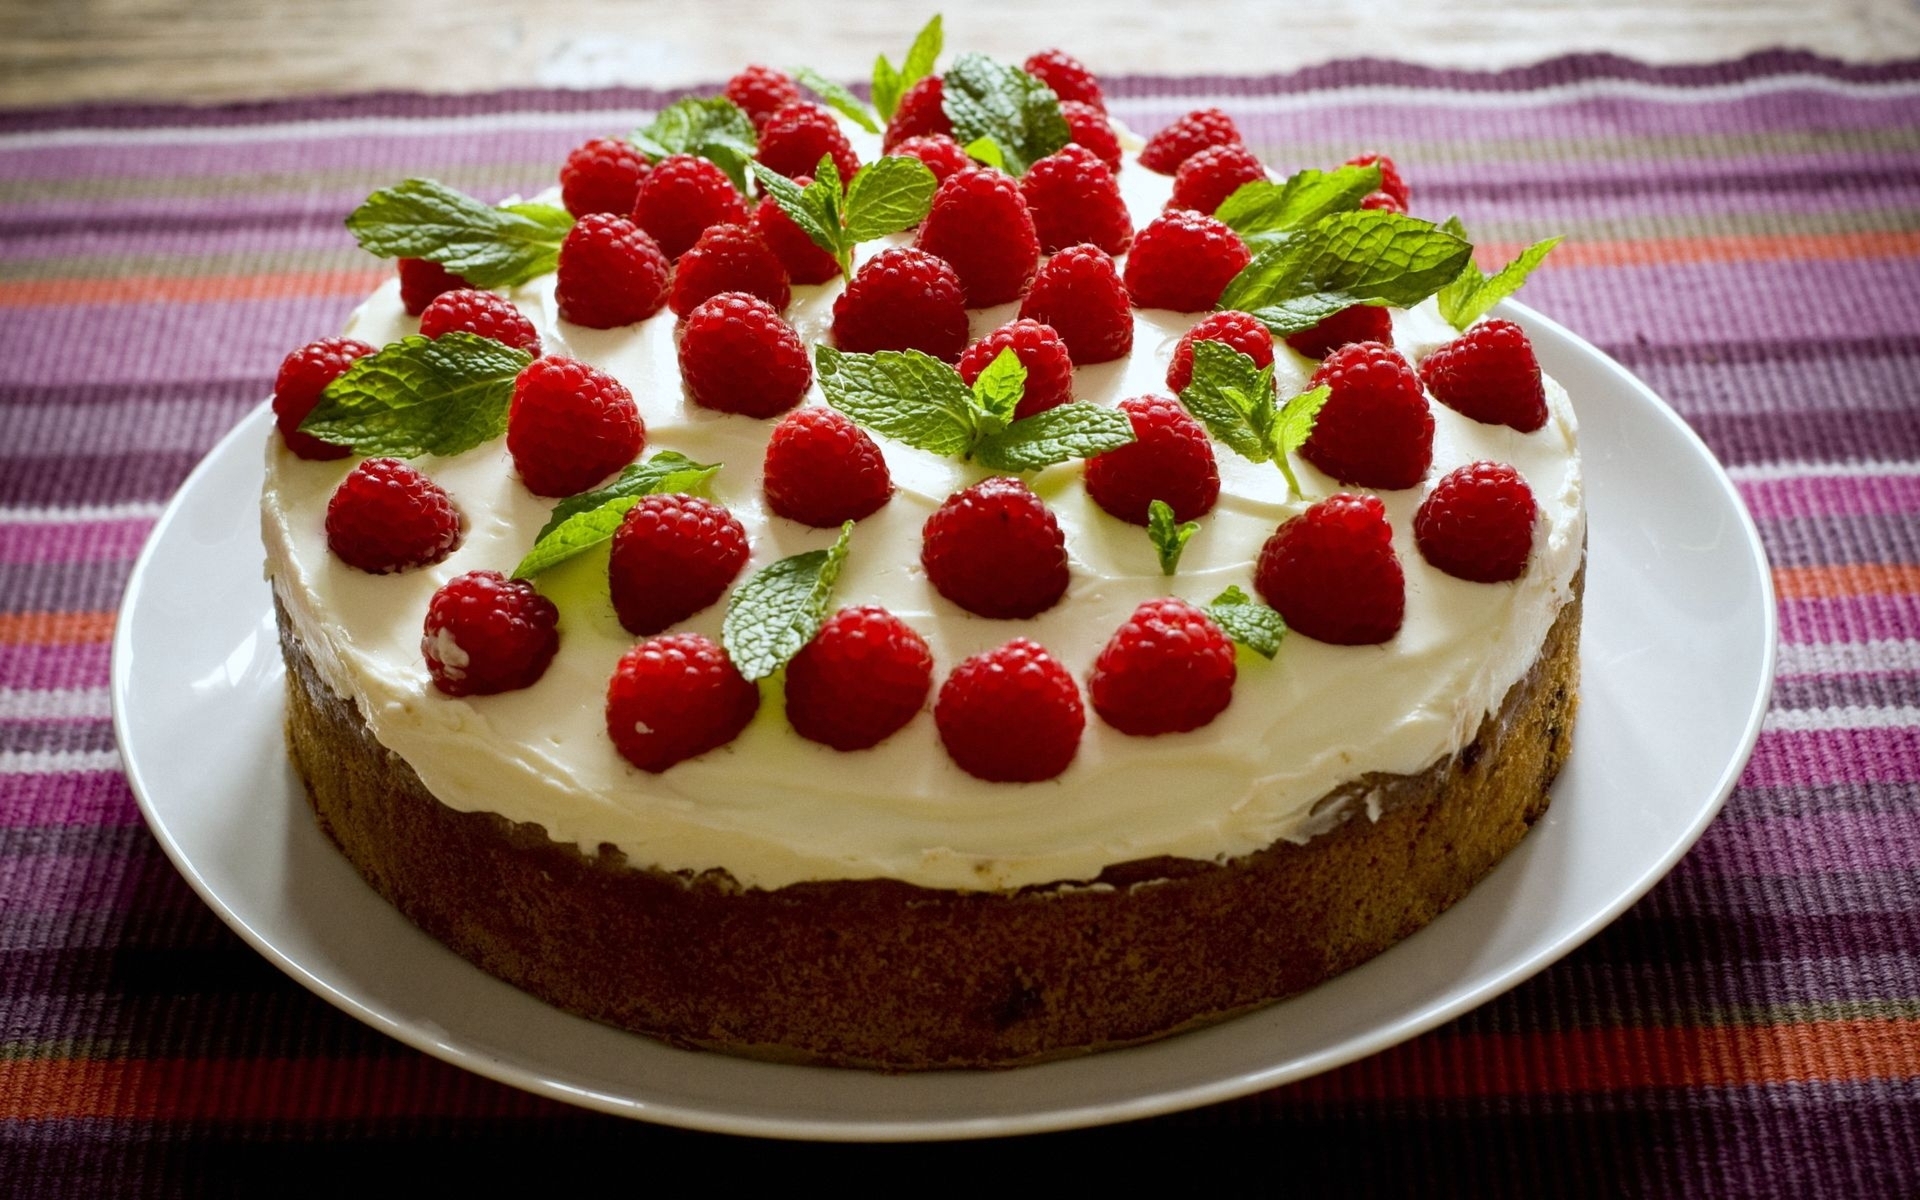 Картинка: Торт, выпечка, ягоды, малина, крем, сладость, мята